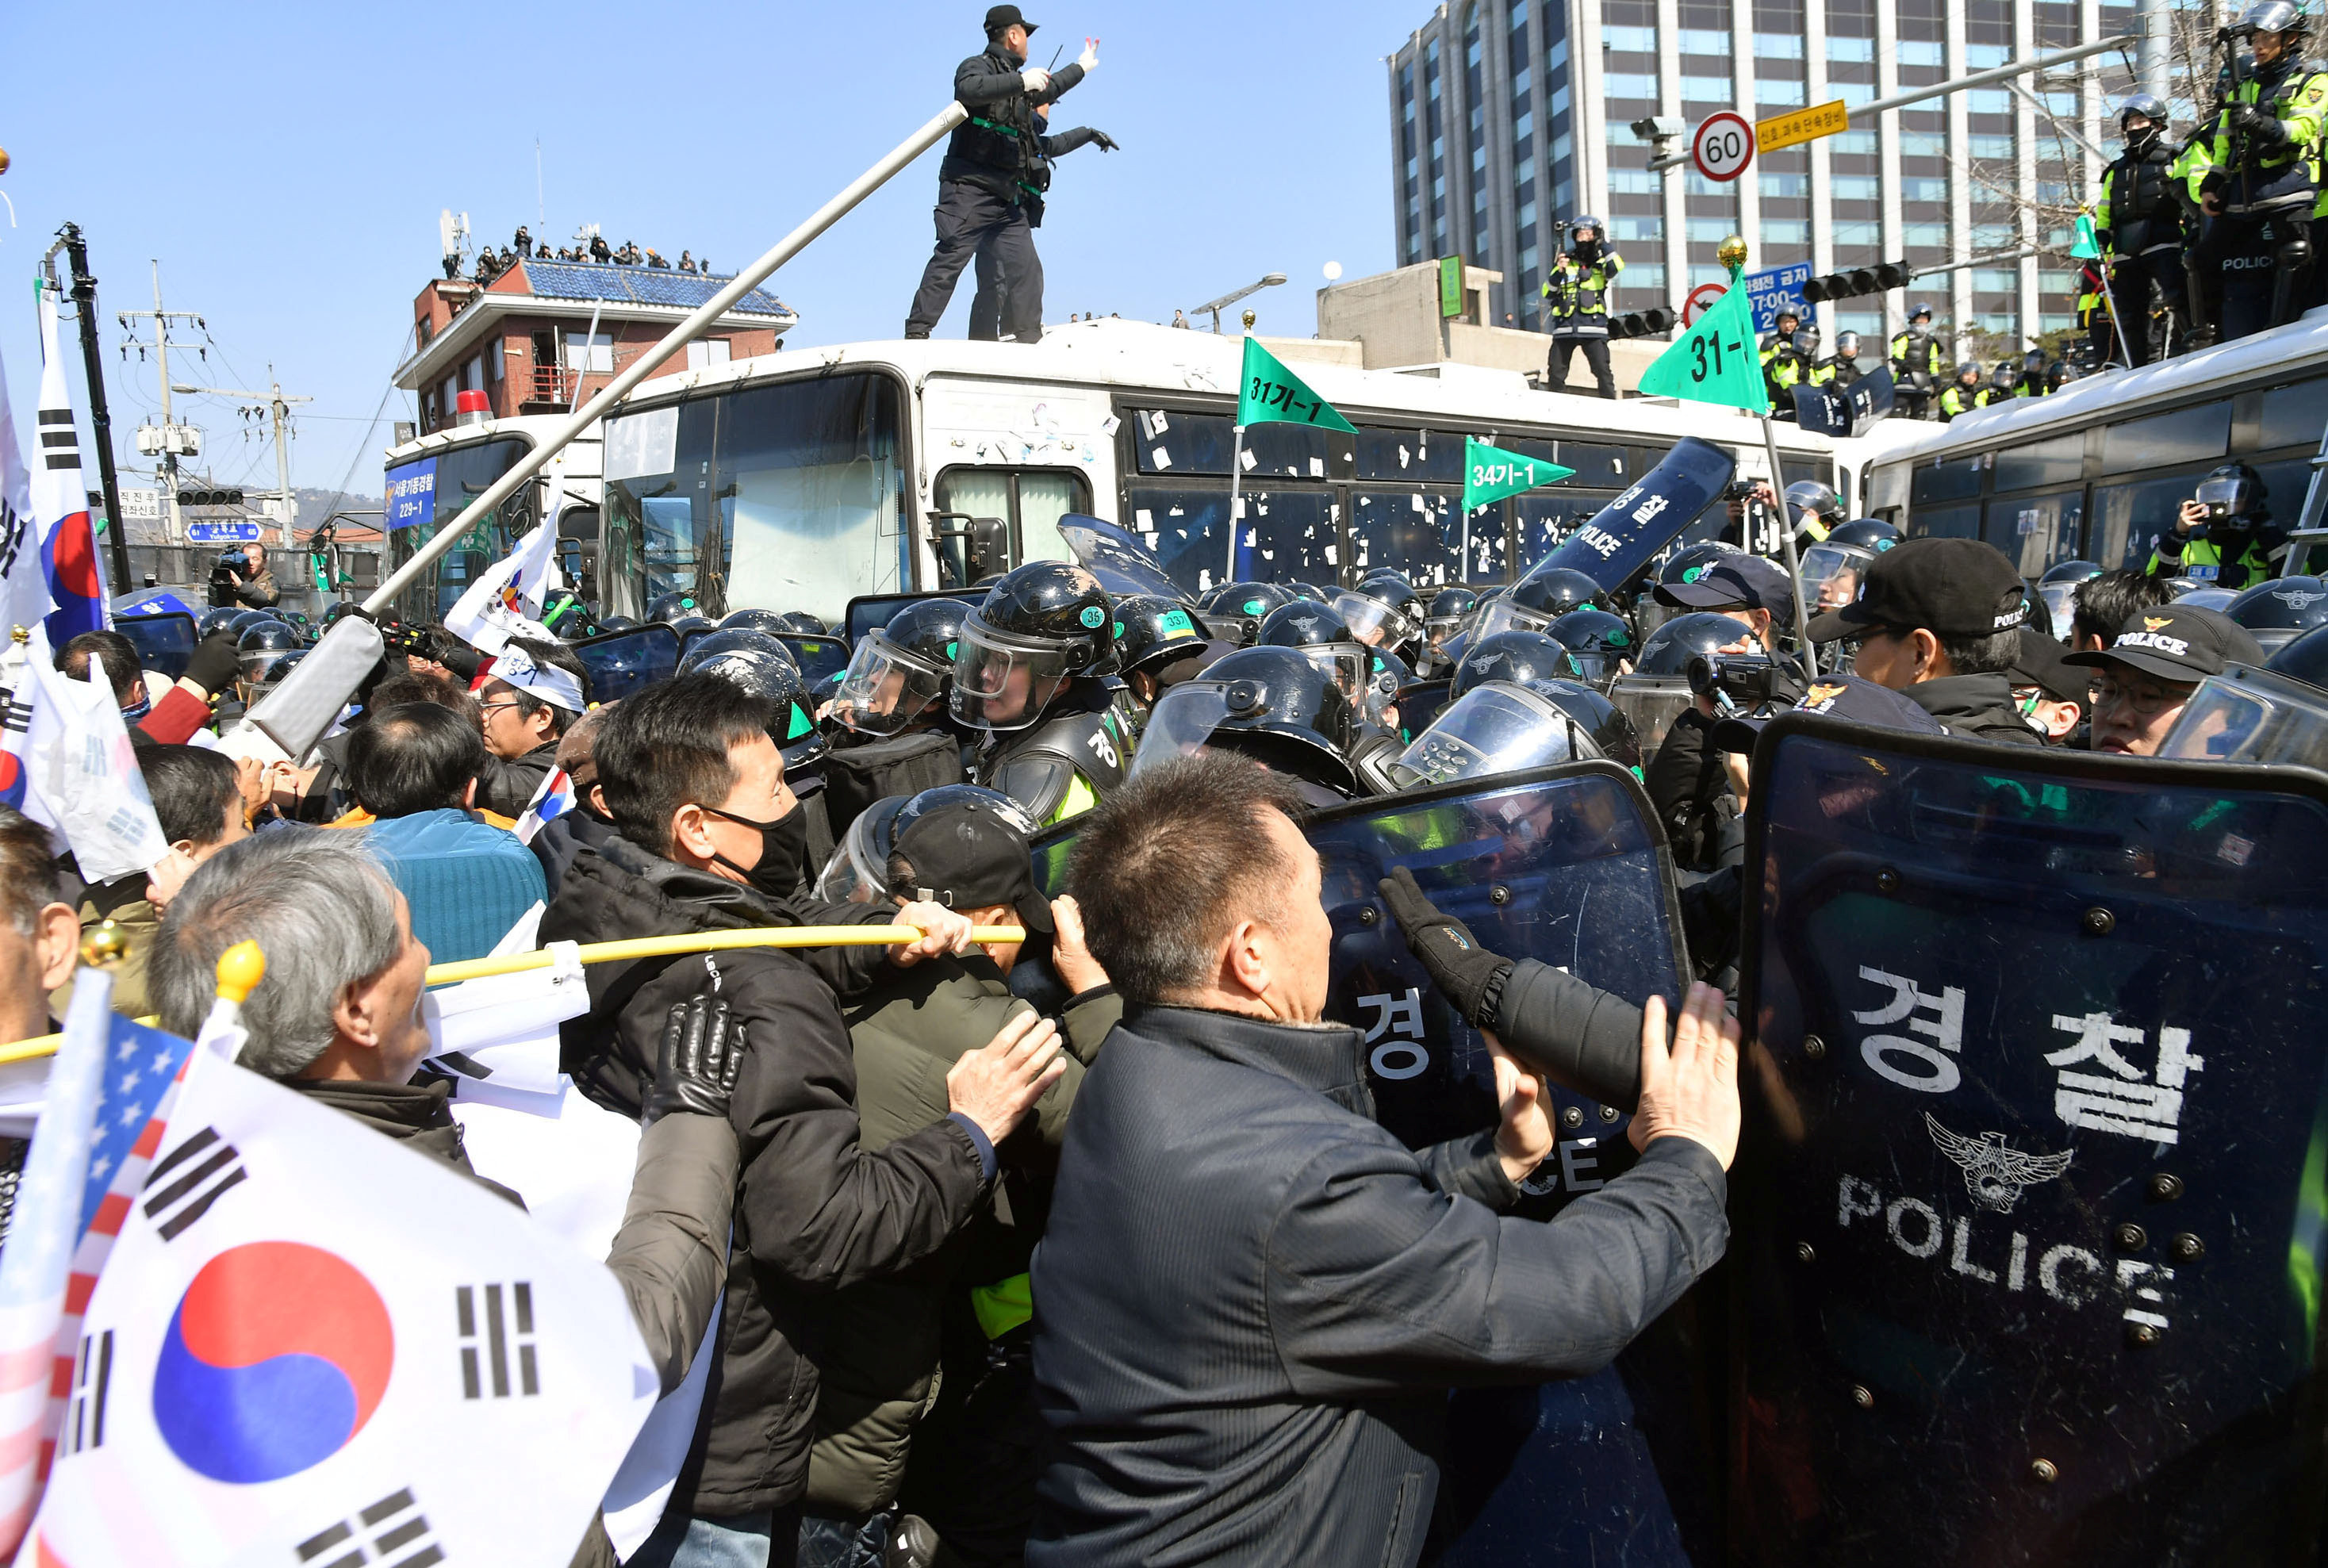 Южнокорейская оппозиция. Пак Кын Хе митинги. Импичмент пак Кын Хе. Митинг в Южной Корее 2016. Южная Корея митинг протеста против президента.